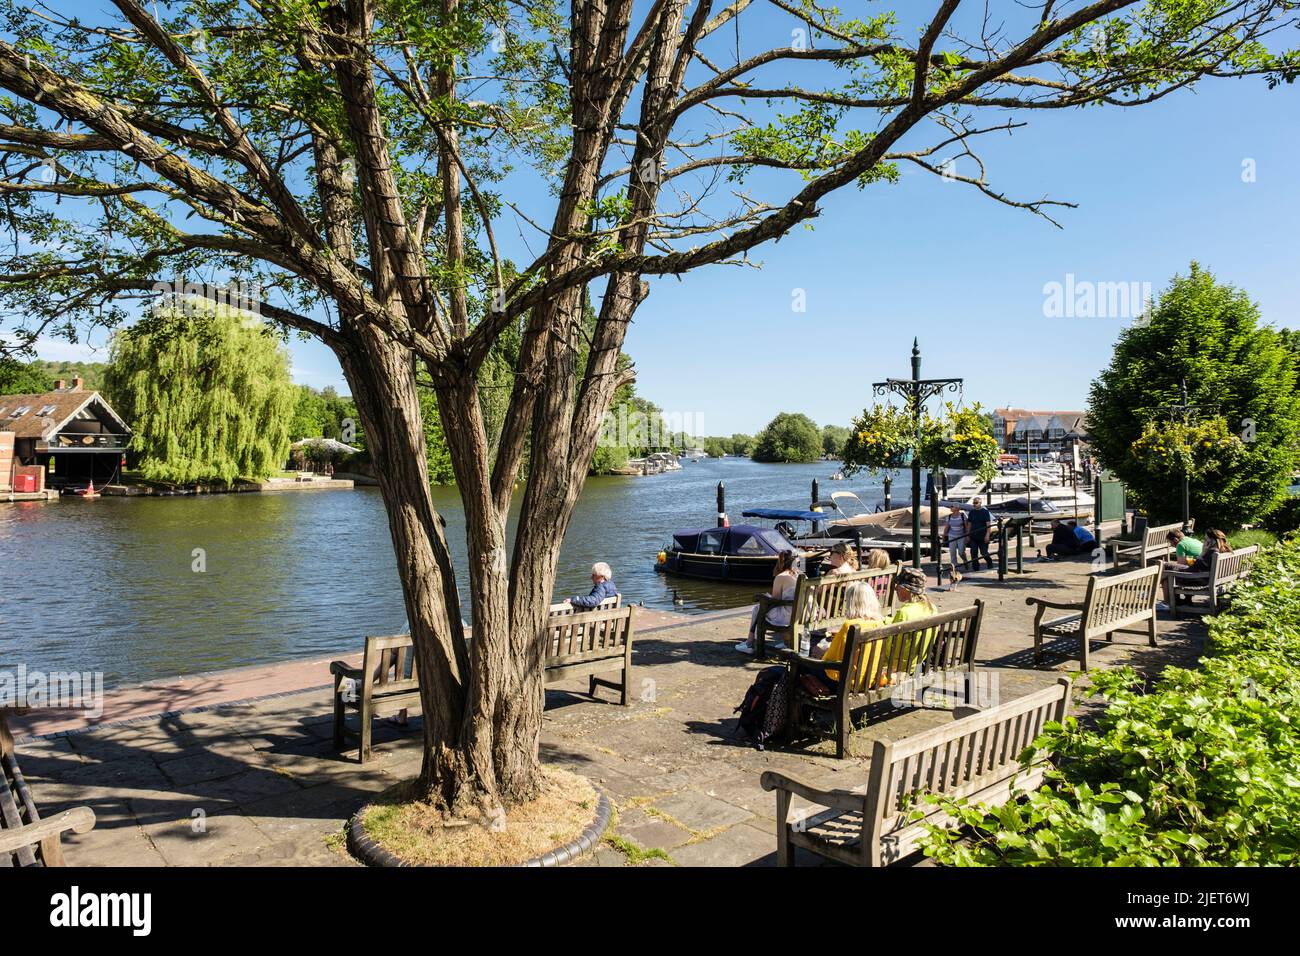 Im Sängerpark am Flussufer neben der Themse entspannen sich die Menschen auf den Sitzen bei Sonnenschein. Henley-on-Thames, Oxfordshire, England, Großbritannien Stockfoto